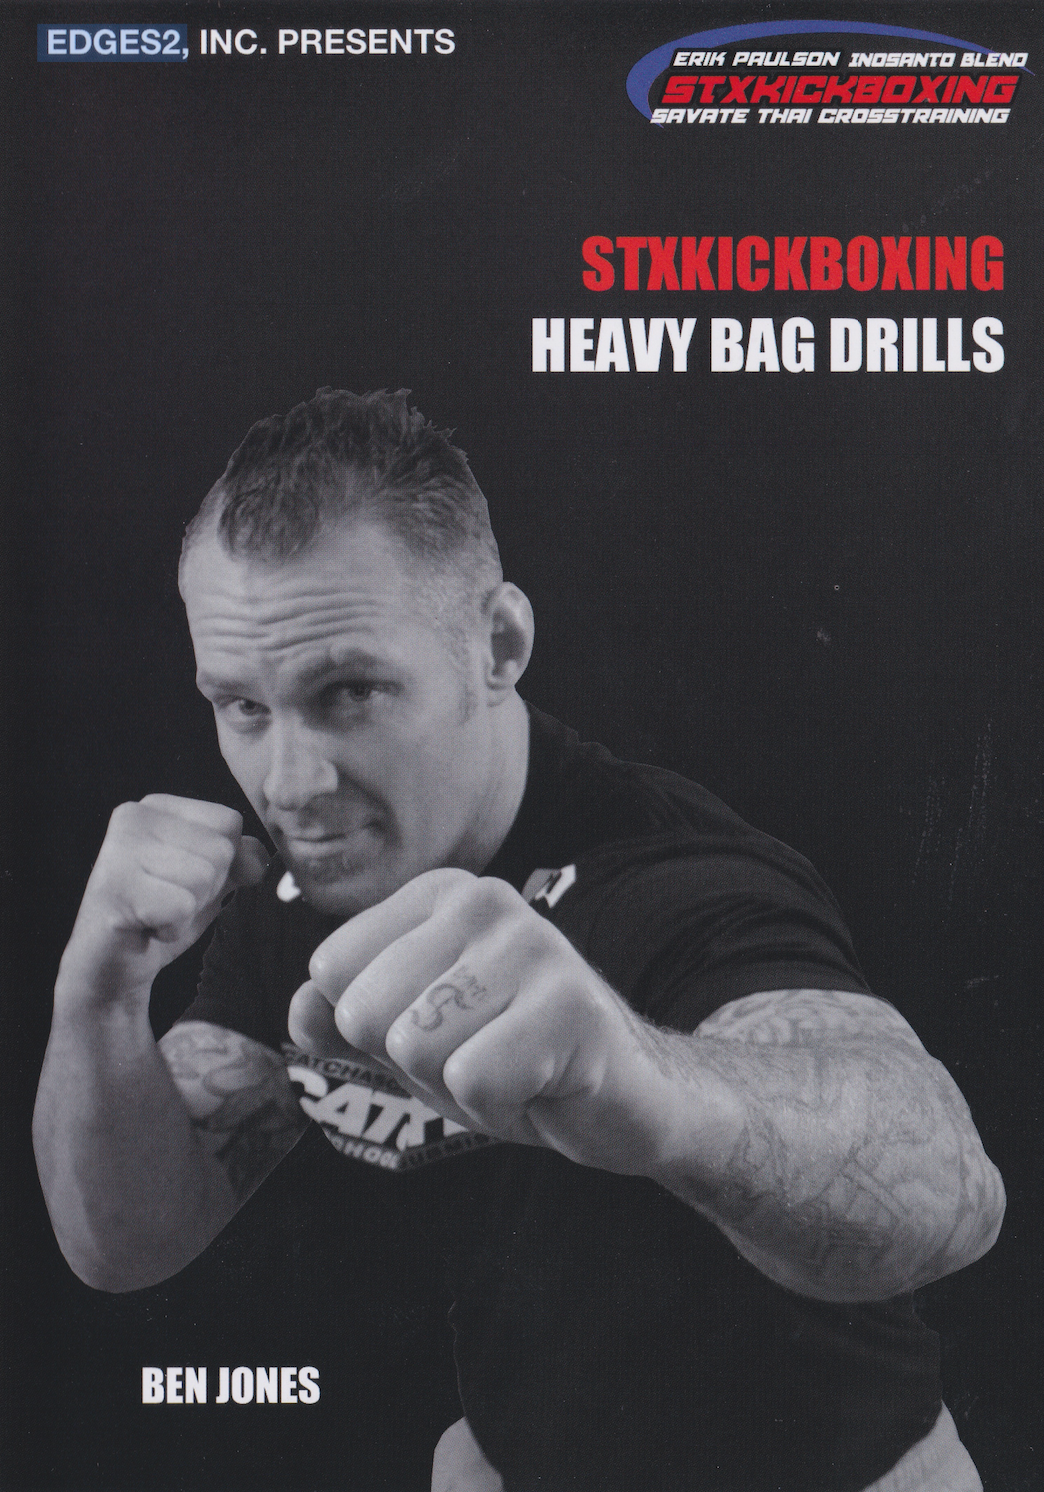 StkKickboxing Heavy Bag Drills DVD with Ben Jones (Preowned)